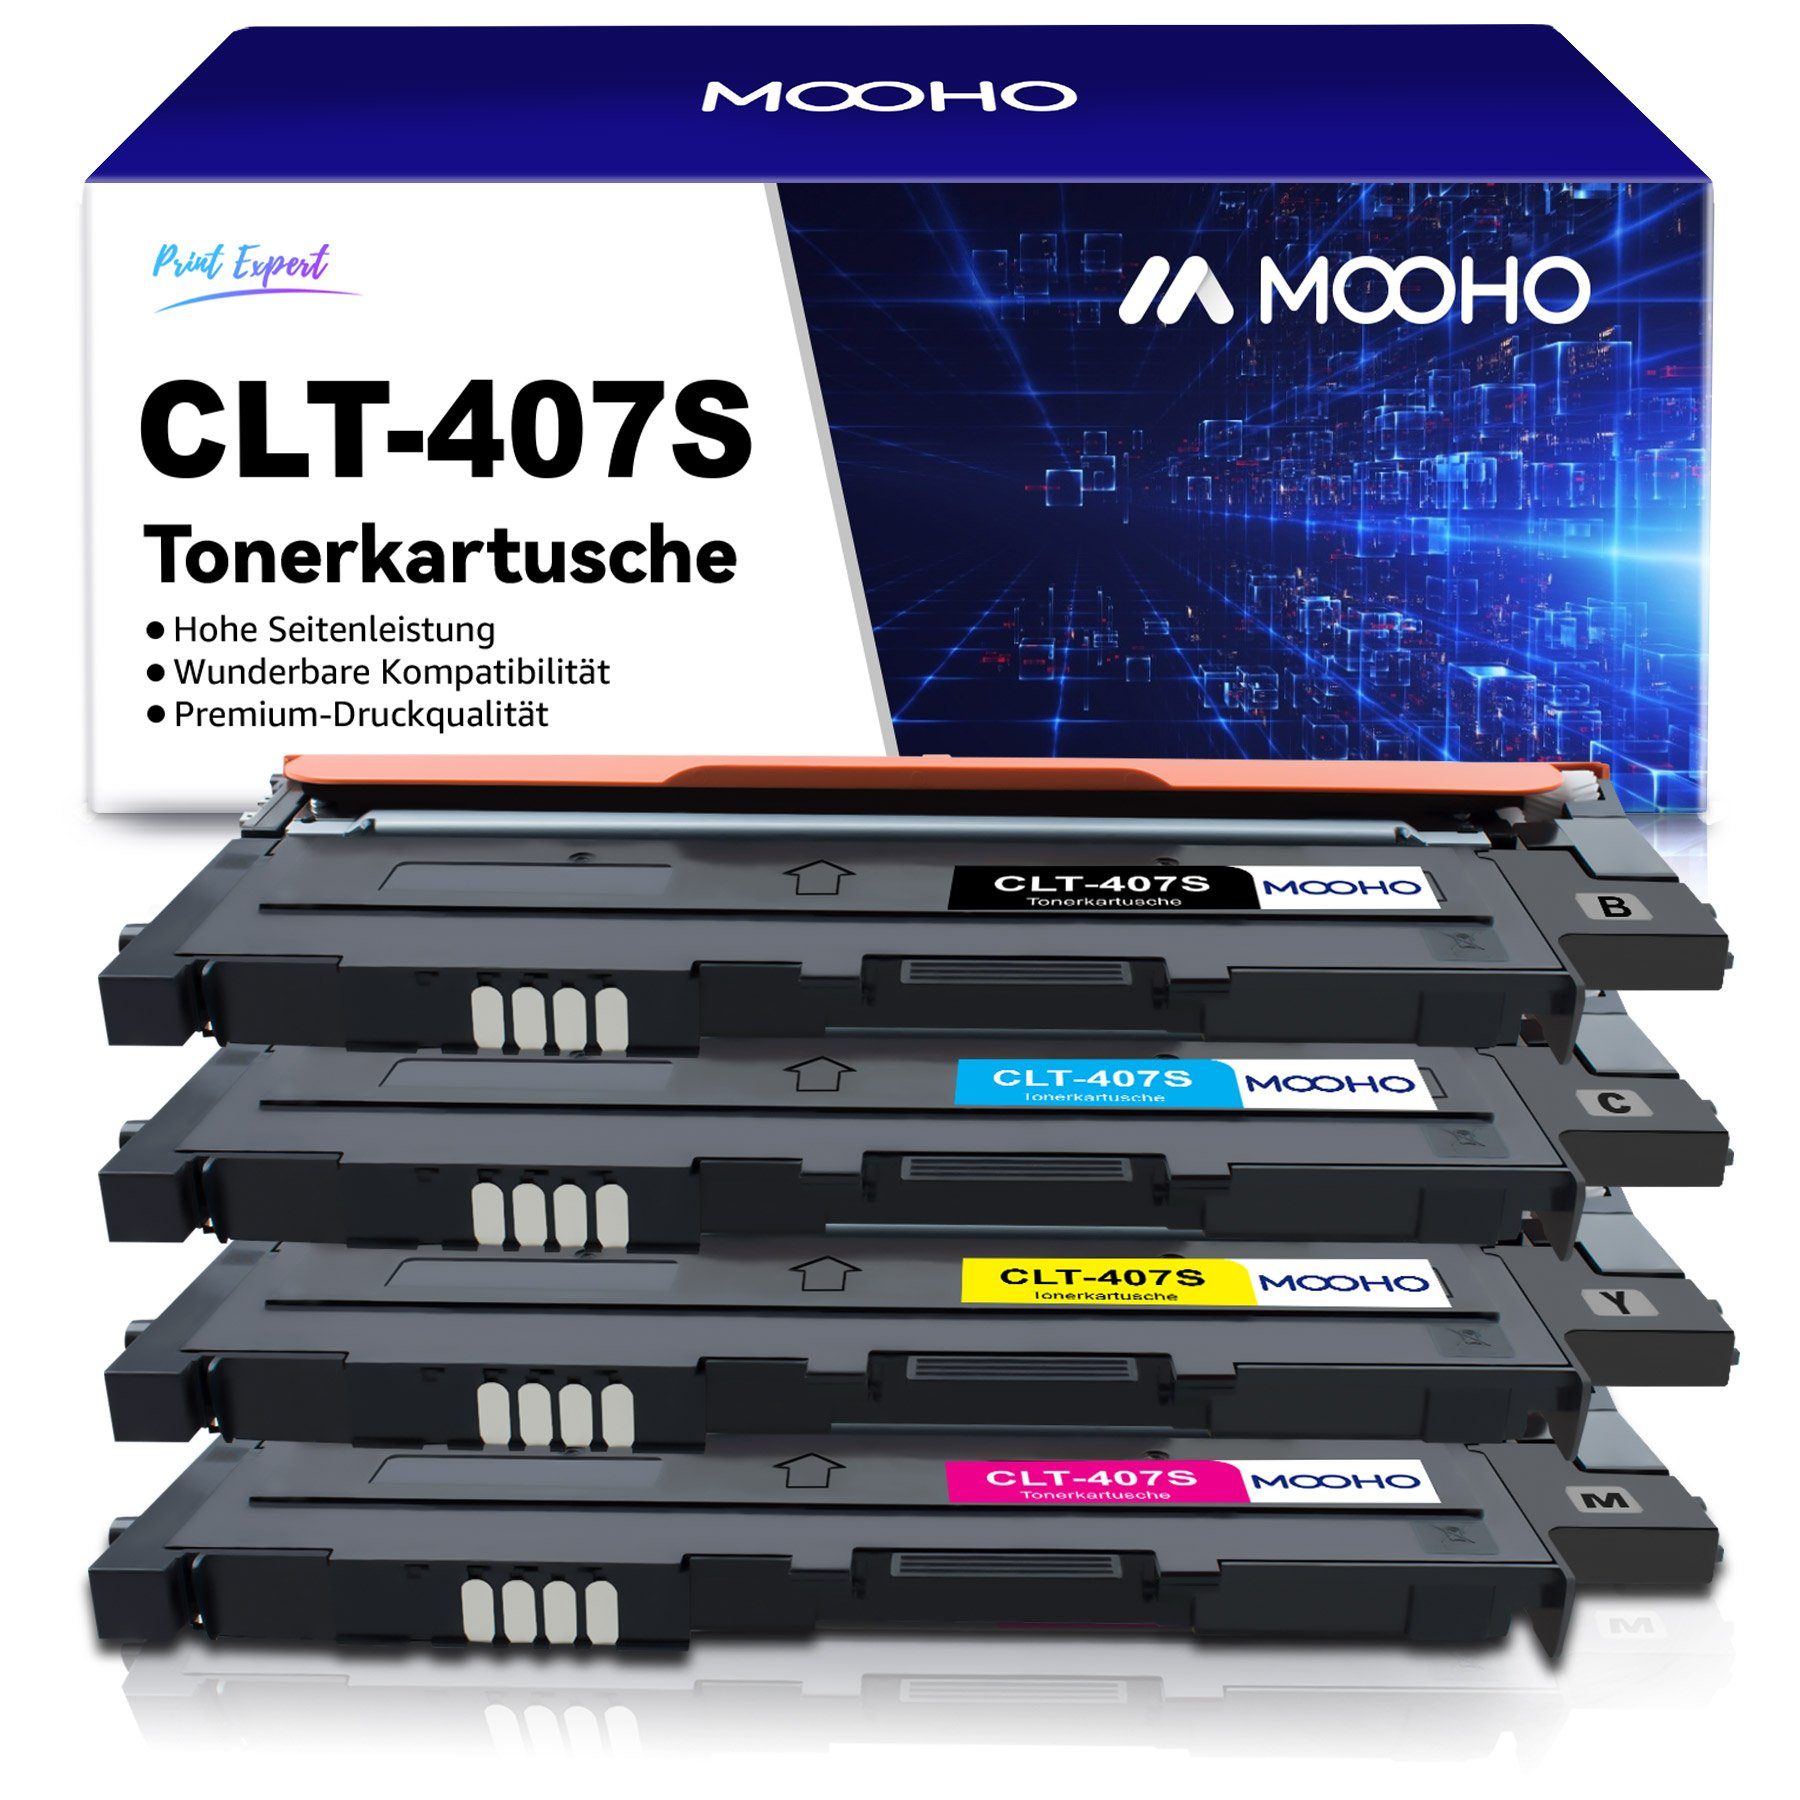 MOOHO Tonerkartusche CLT-407S für Samsung CLP-320 320N 325 325N 325W